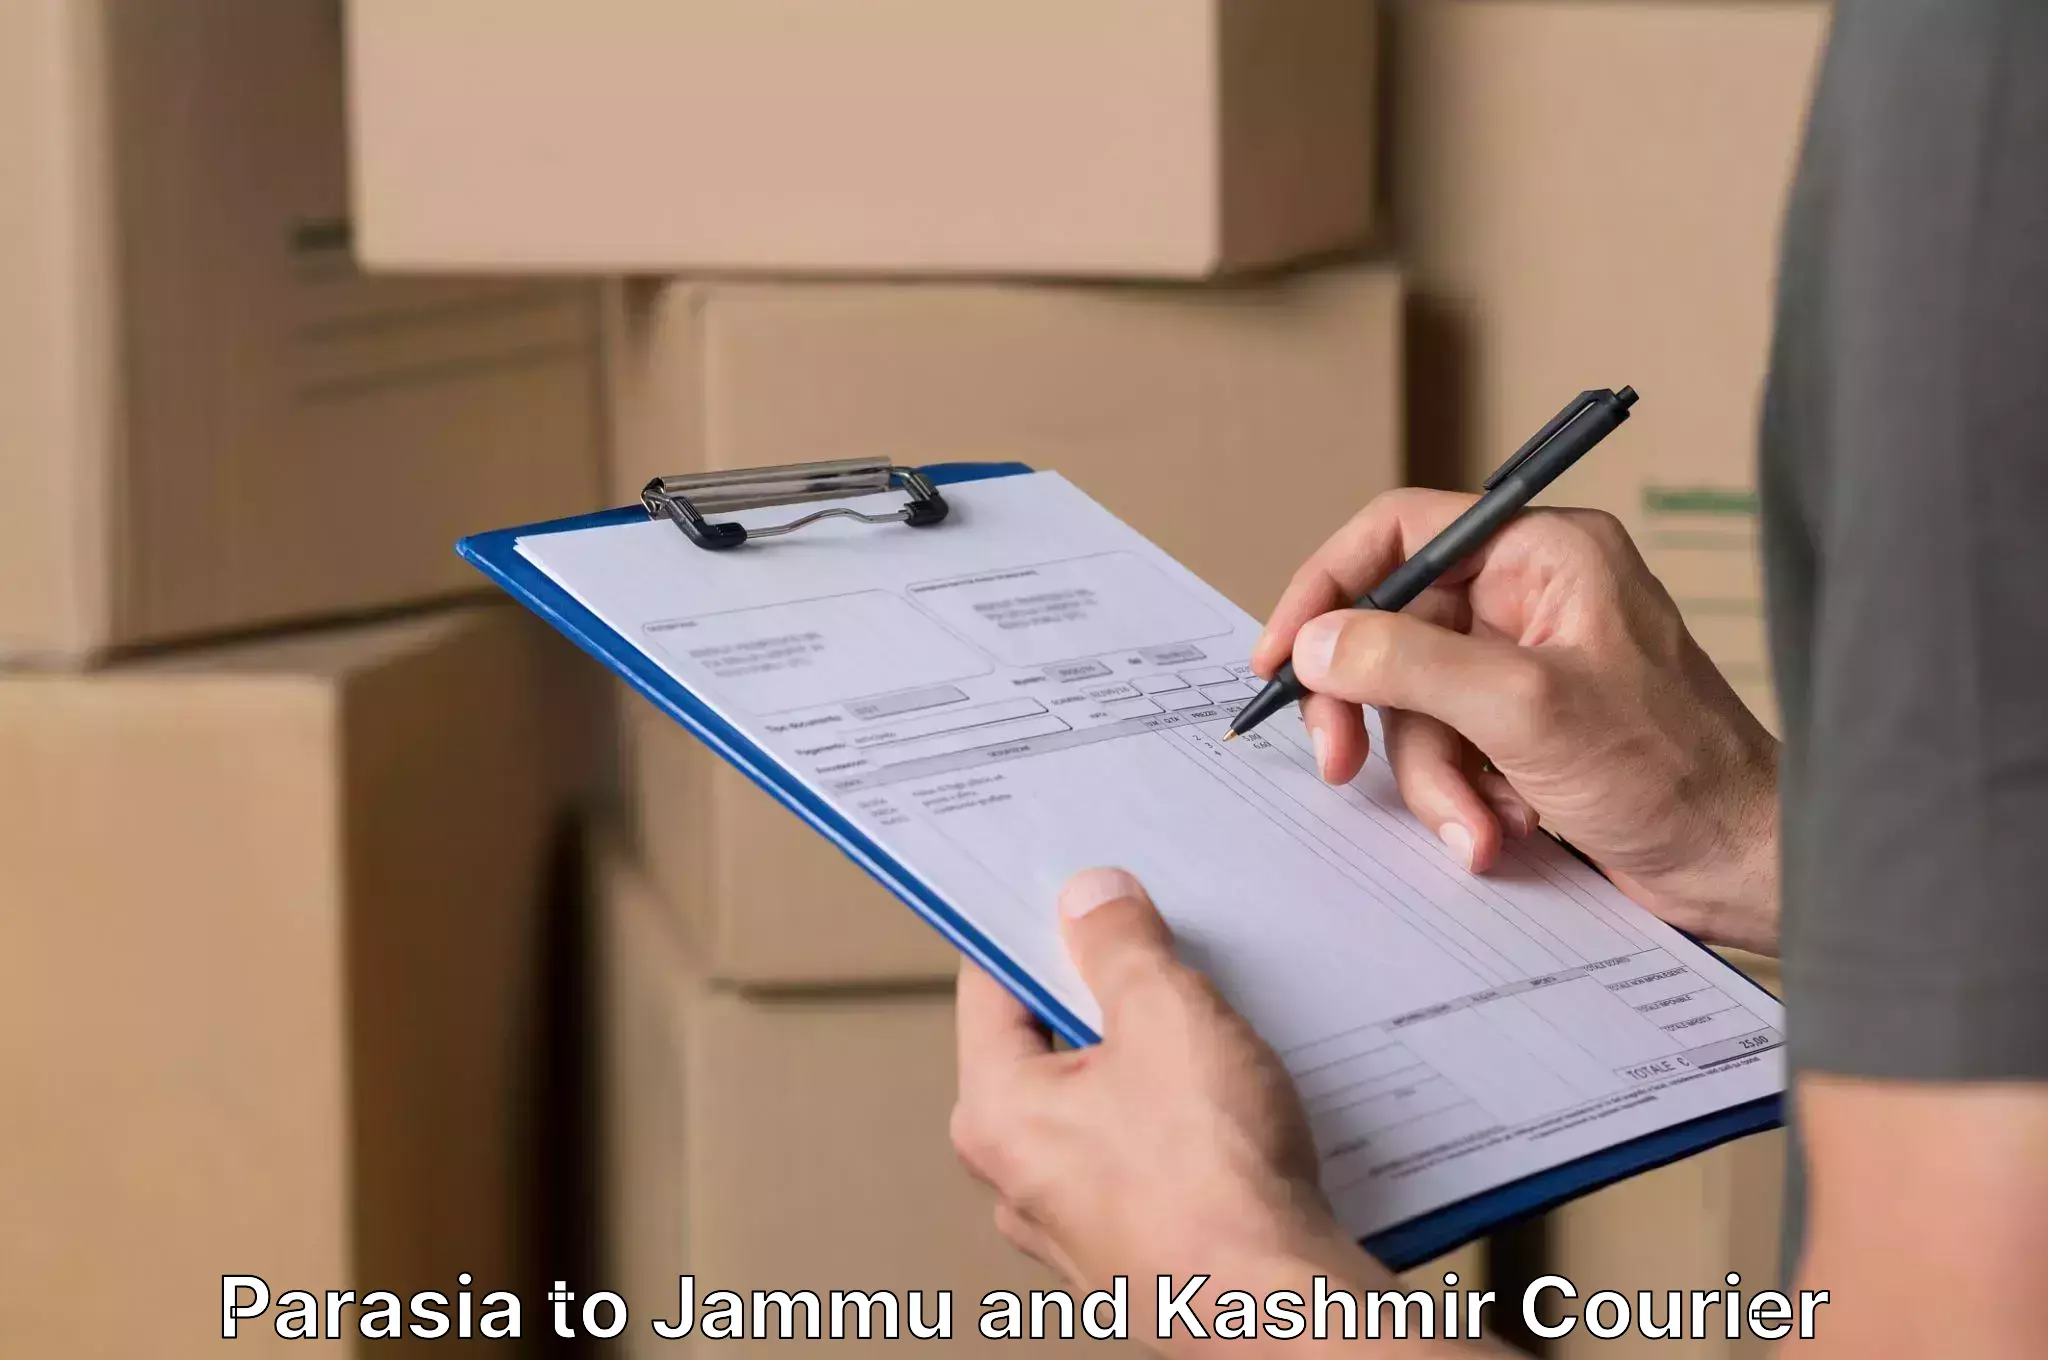 Furniture moving experts Parasia to Jammu and Kashmir